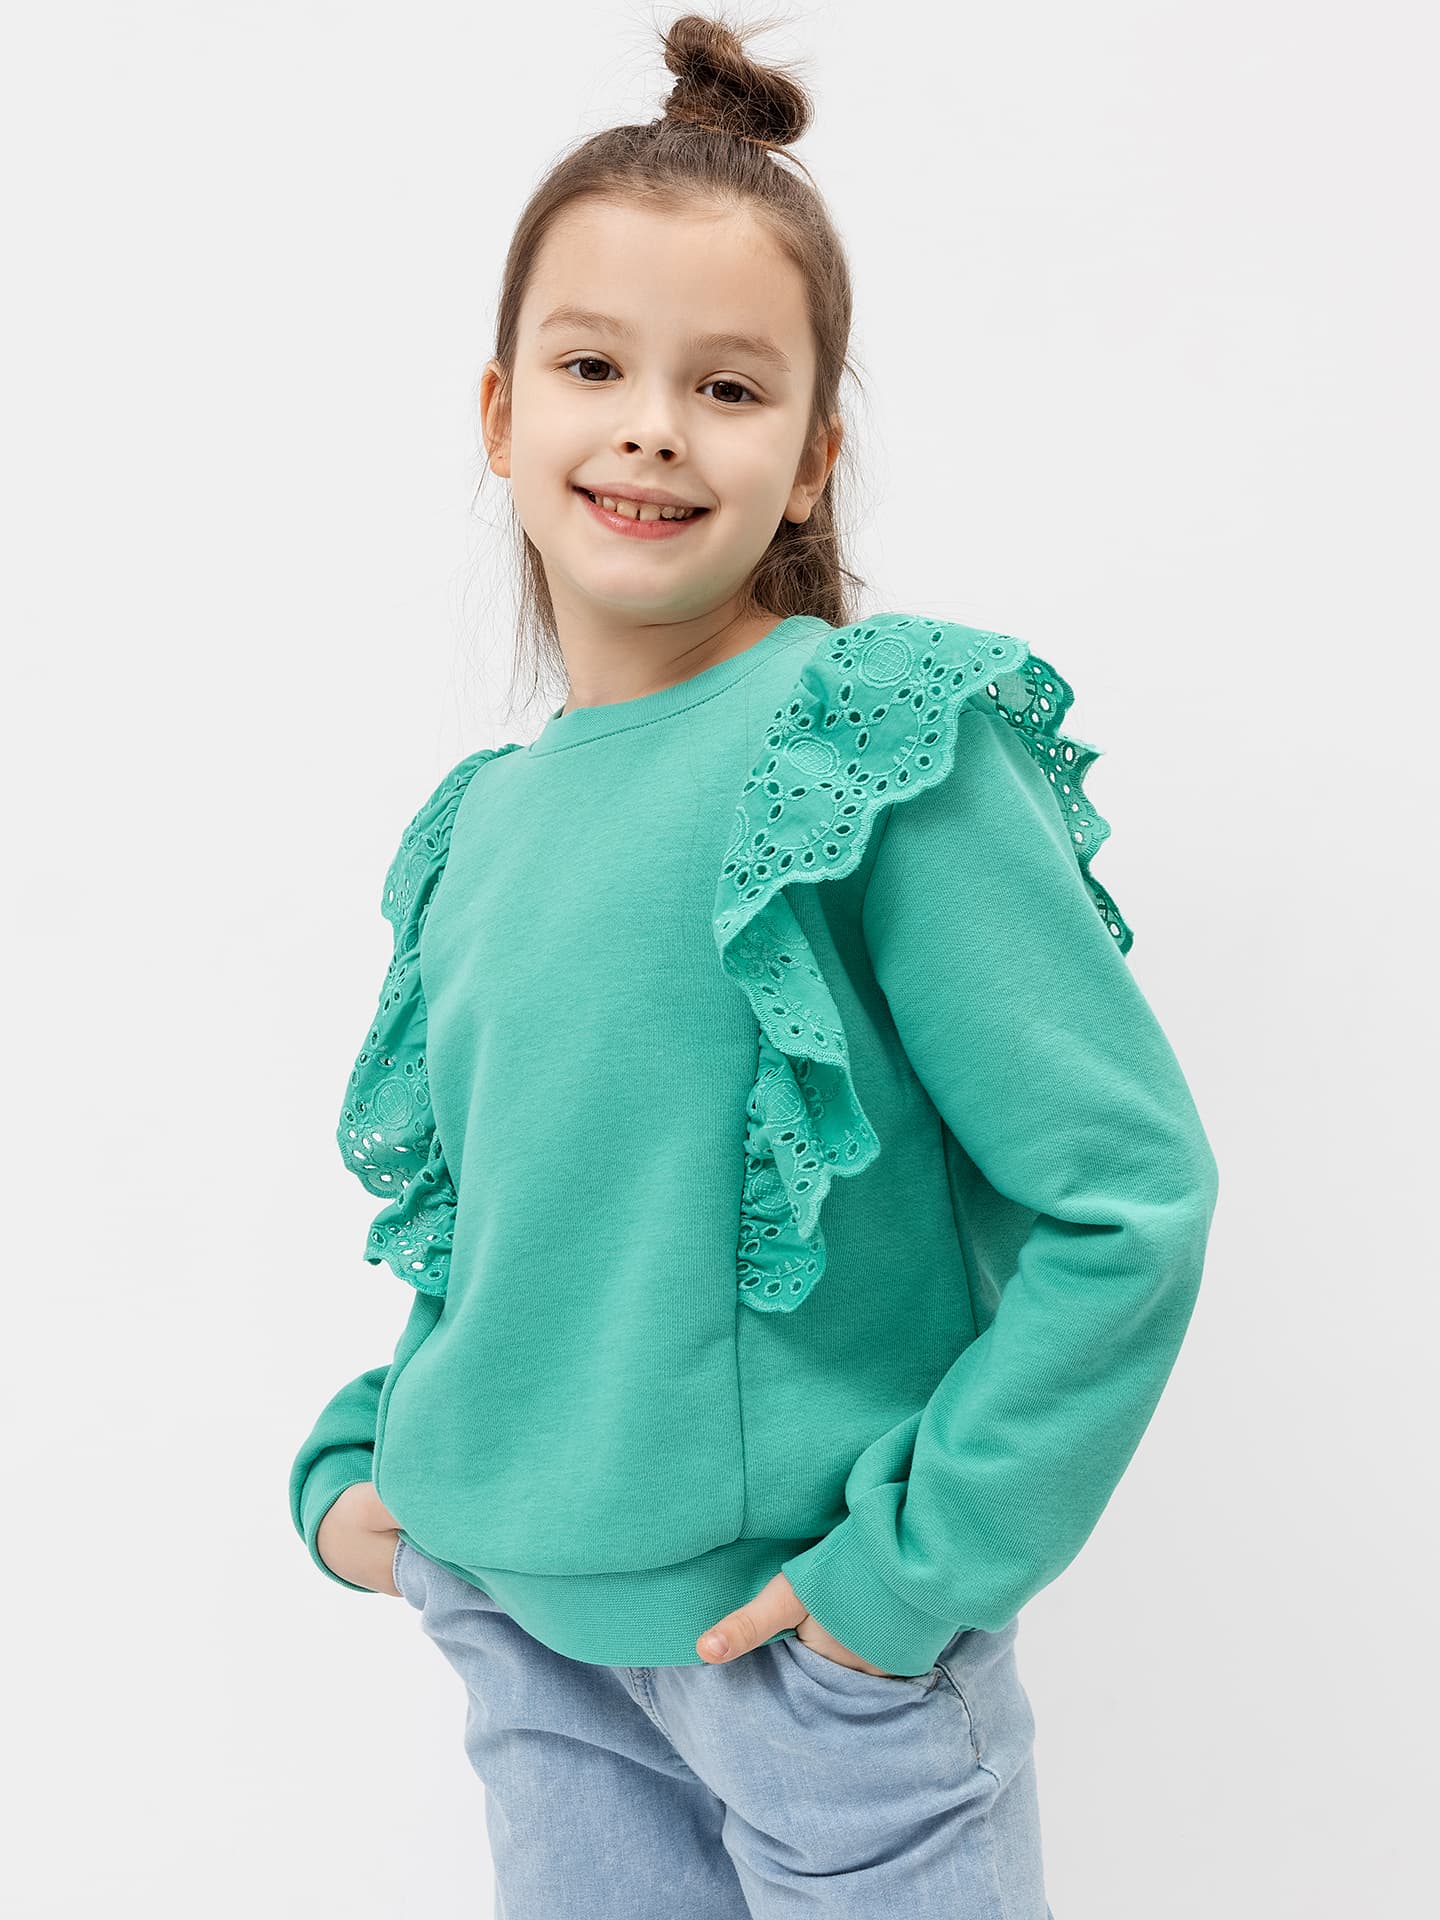 Джемпер для девочек в зеленом цвете с декоративными рюшами